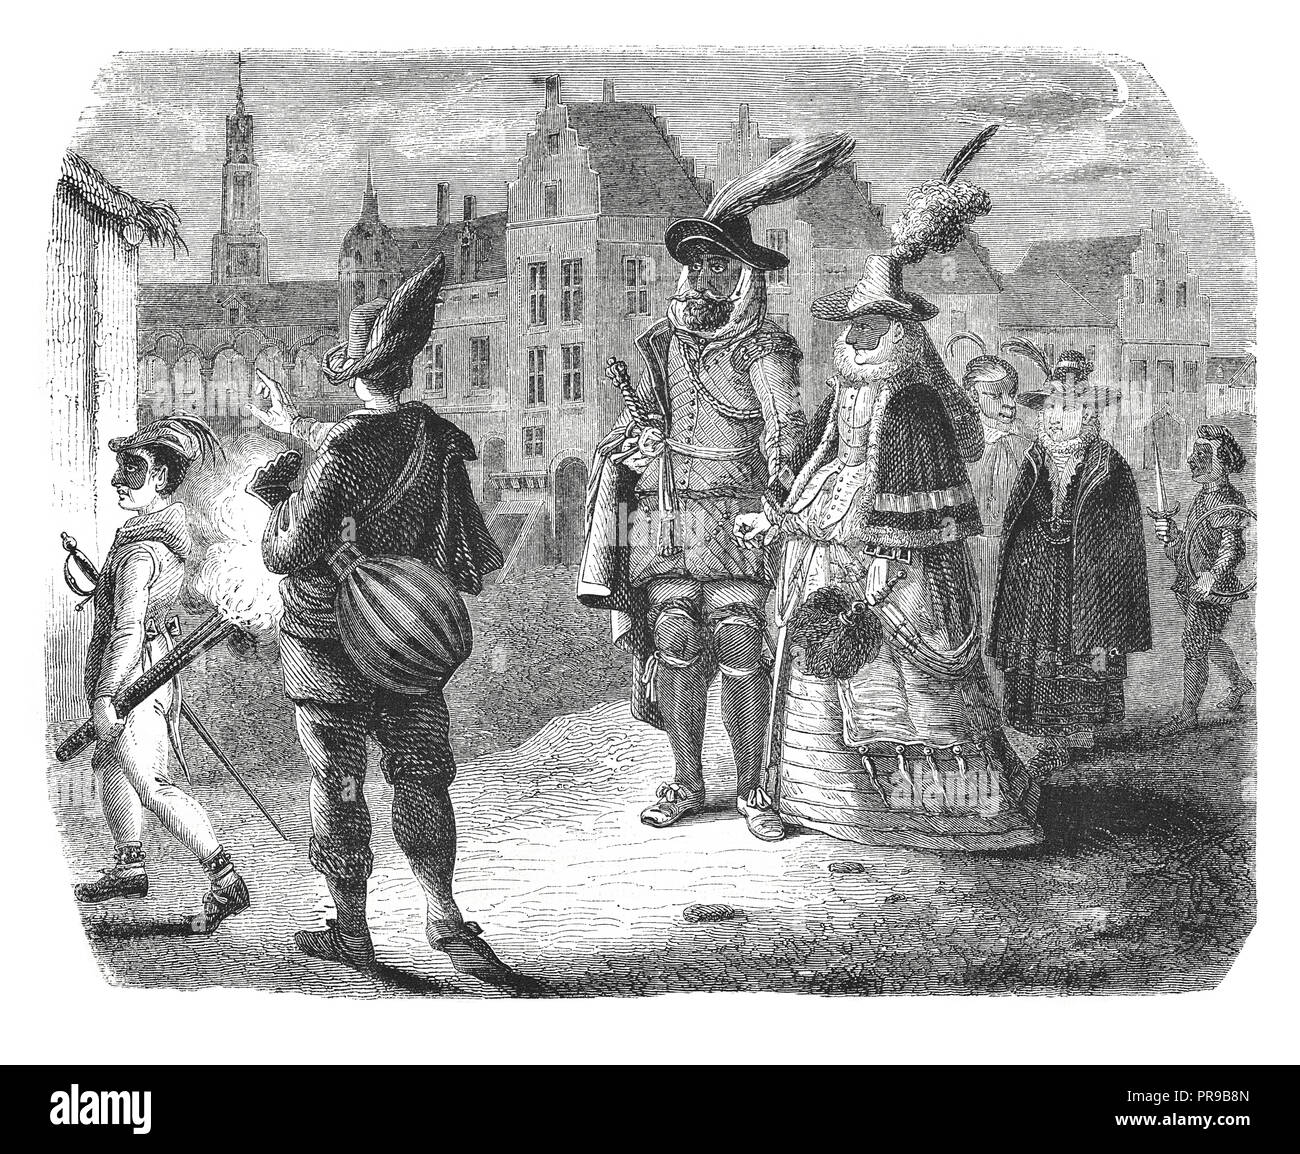 19ème siècle illustration de noble famille le soir dans une ville des Pays-Bas (16ème siècle). Oeuvre originale publiée dans le magasin Pitto Banque D'Images